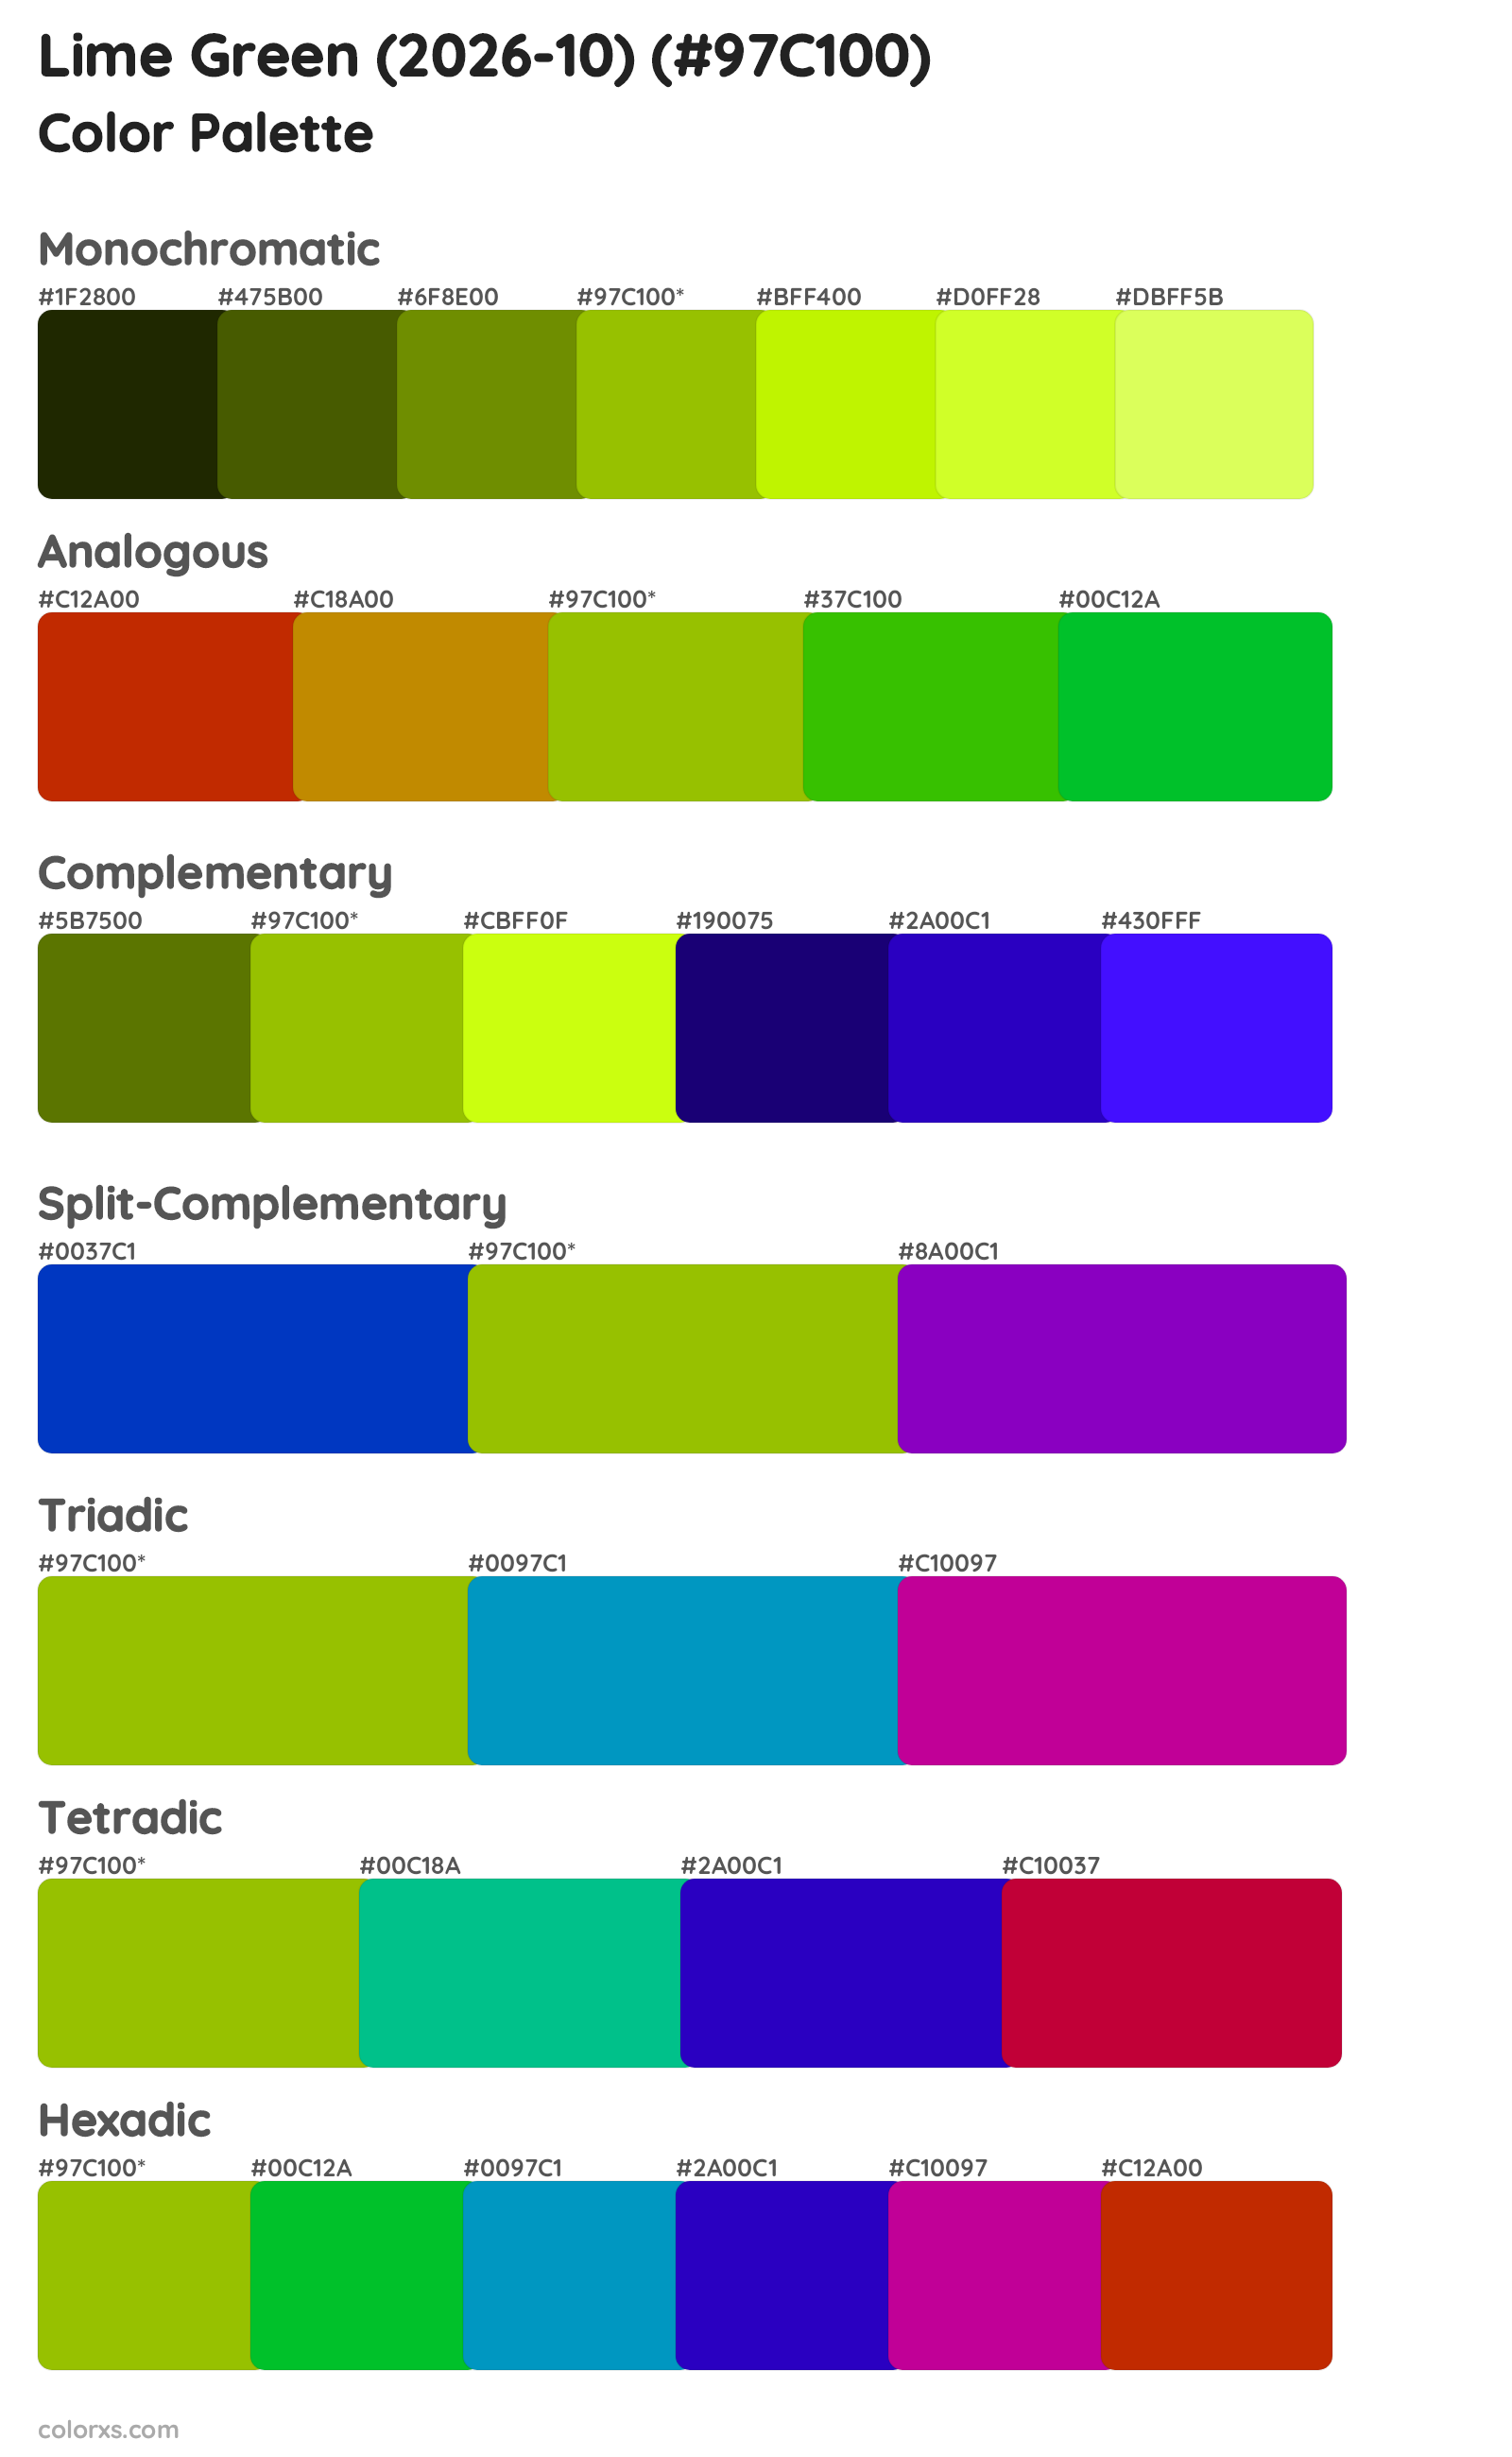 Lime Green (2026-10) Color Scheme Palettes